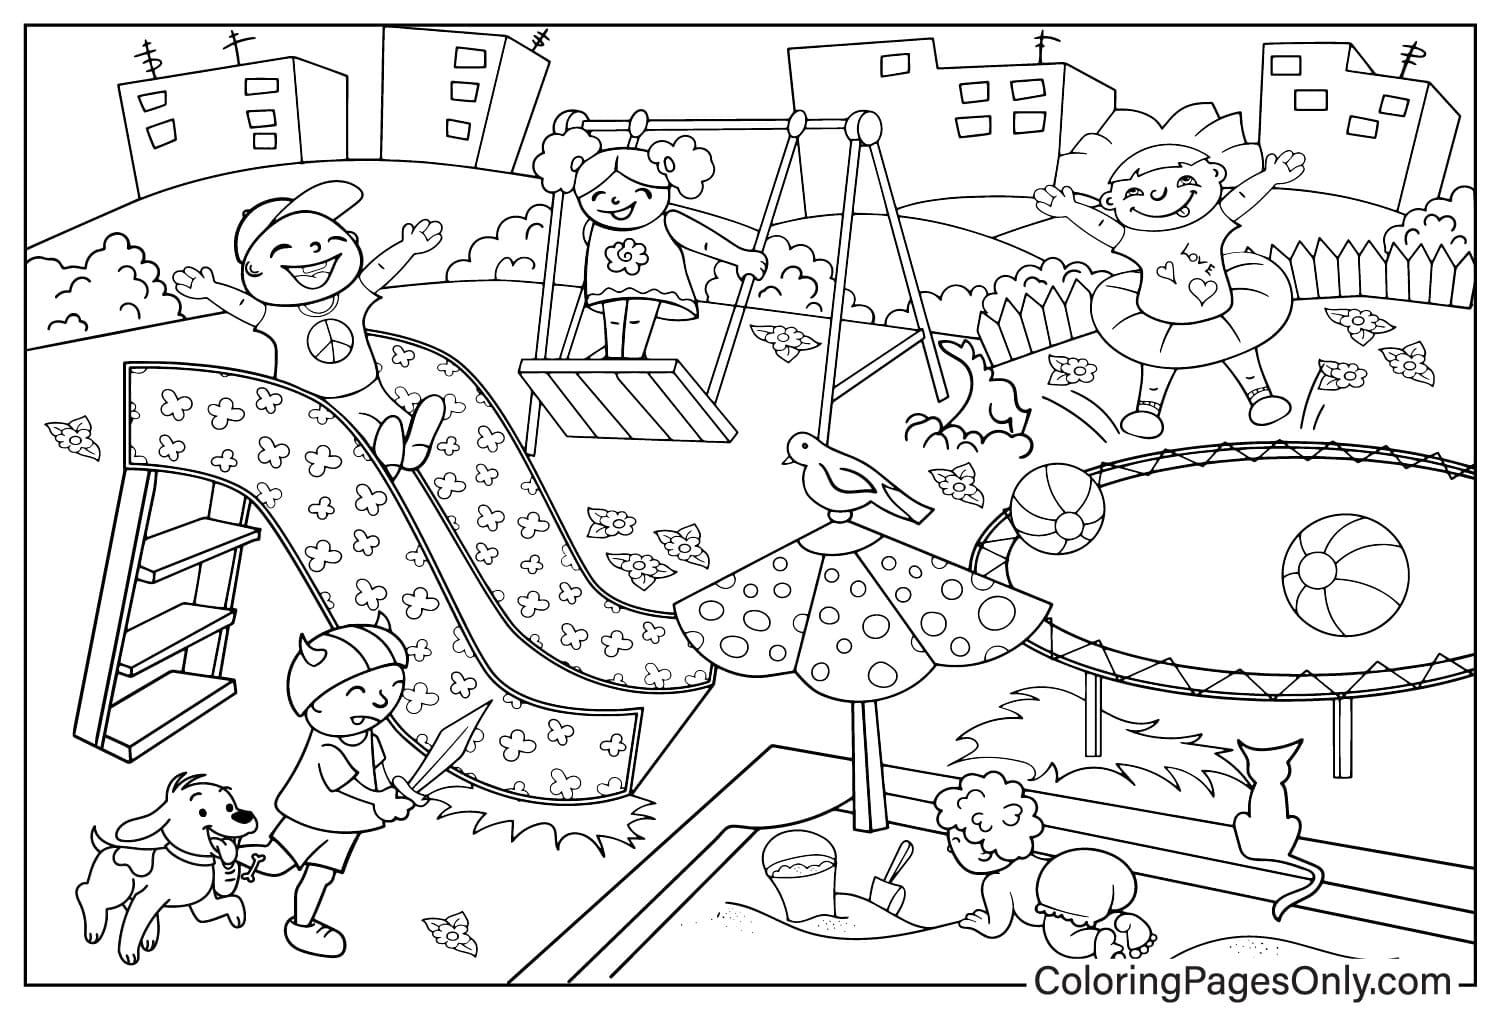 Página para colorir para impressão gratuita do Playground no Playground